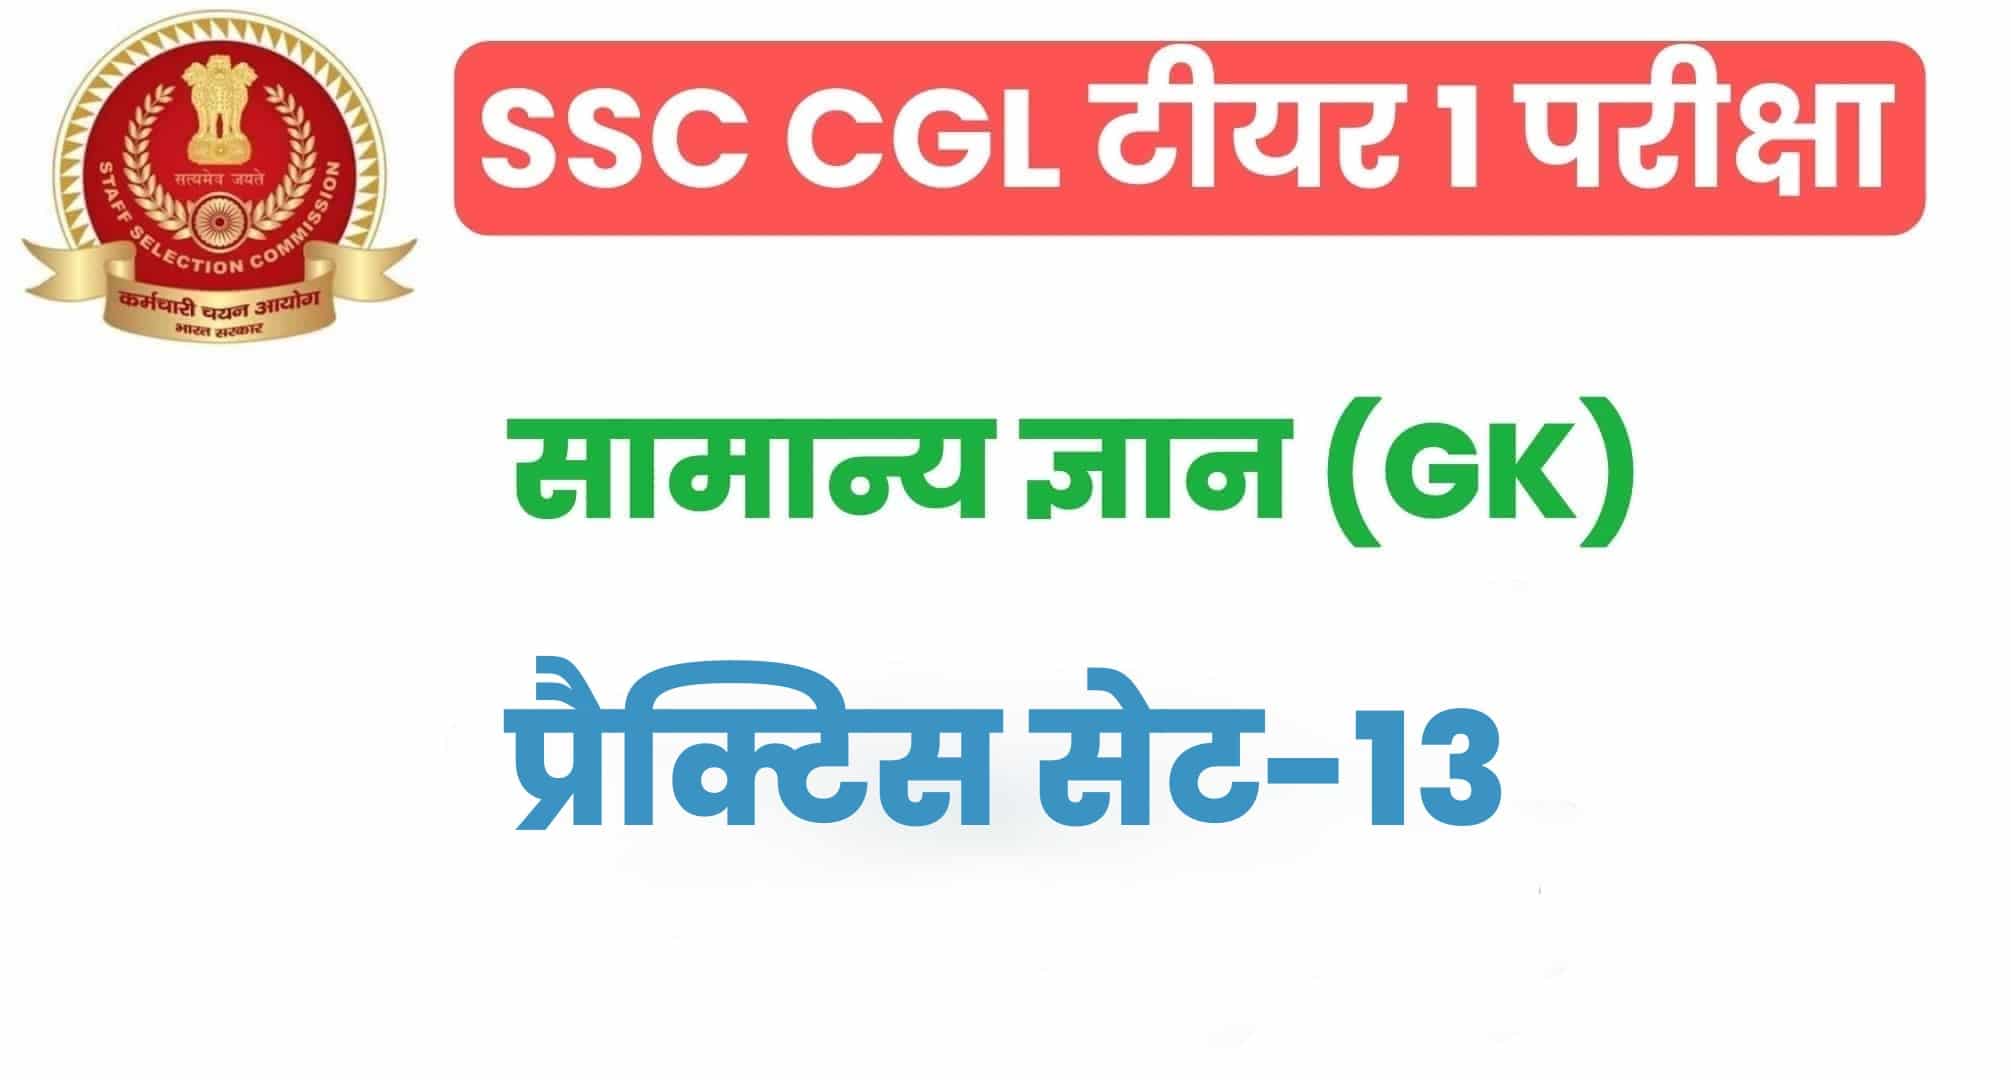 SSC CGL GK/GS प्रैक्टिस सेट 13 :  सामान्य ज्ञान के 25 महत्वपूर्ण प्रश्न, परीक्षा से पहले अवश्य अध्ययन करें